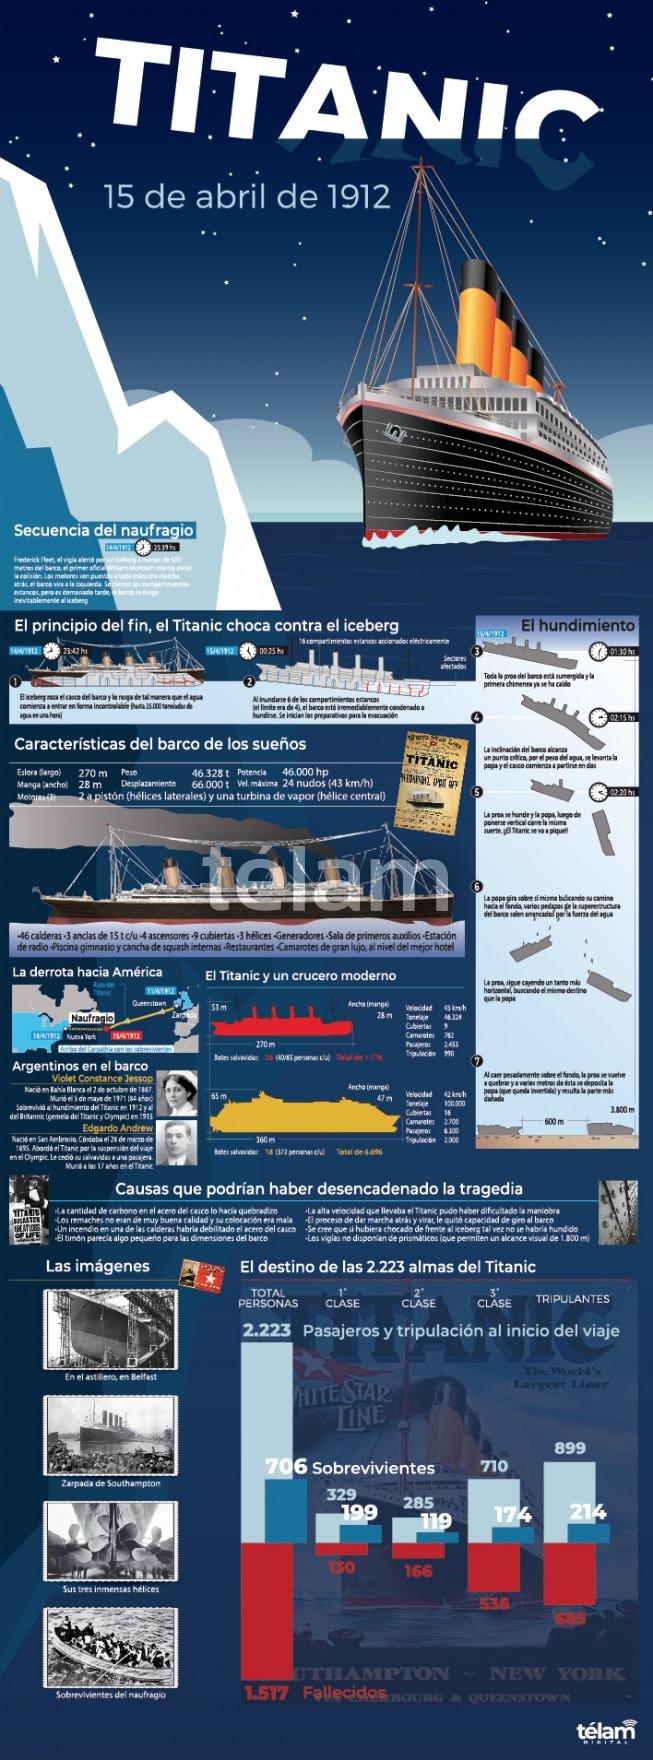 infografia titanic